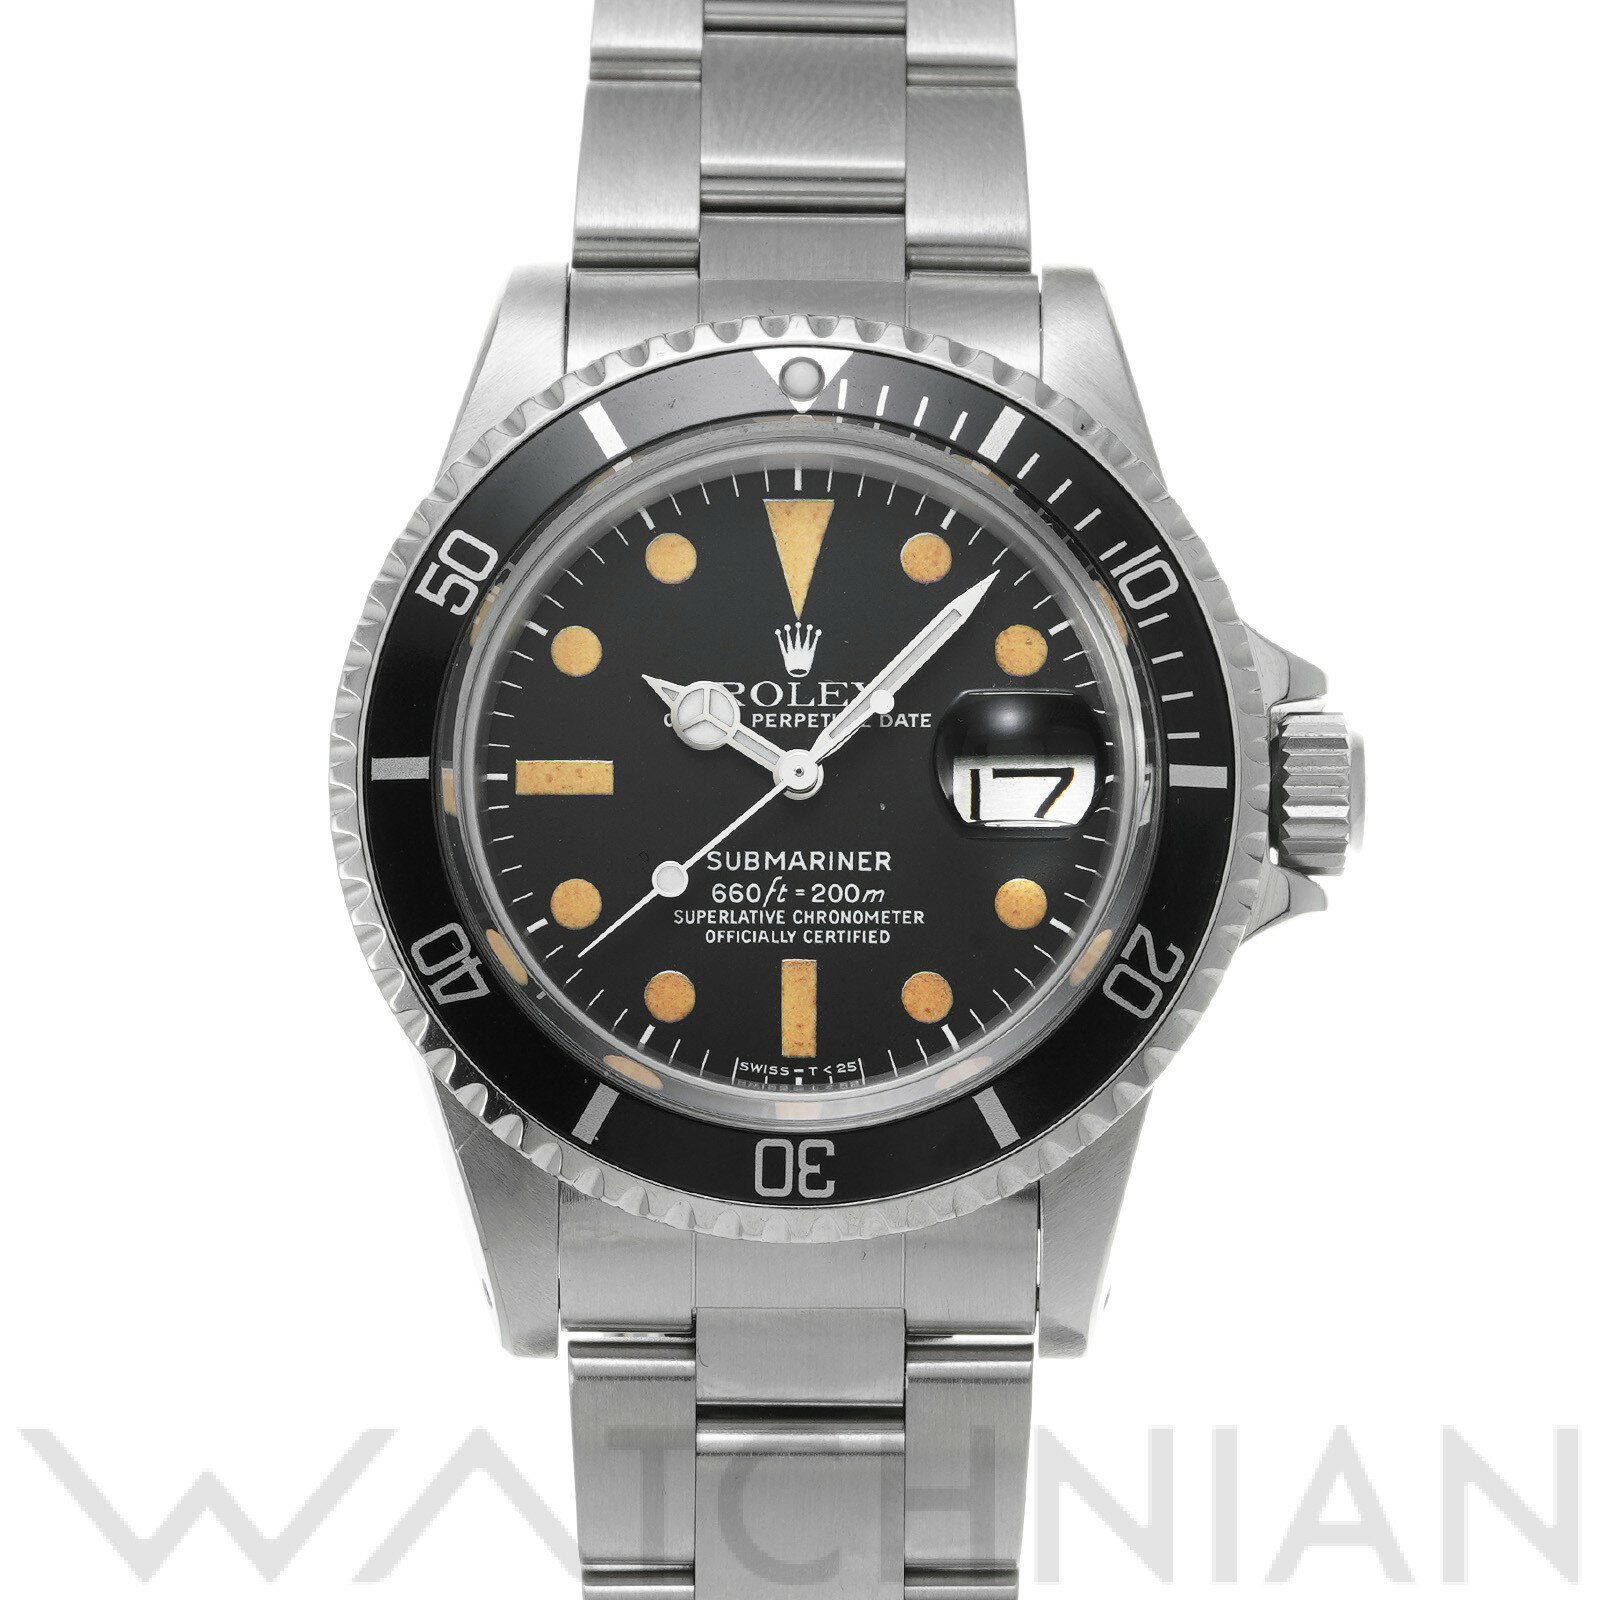 【5種選べるクーポン】【ローン48回払い無金利】【中古】 ロレックス ROLEX サブマリーナ デイト mark2 1680 53番台(1977年頃製造) ブラック メンズ 腕時計 黒 ブランド ロレックス腕時計 ウォッチ 高級腕時計